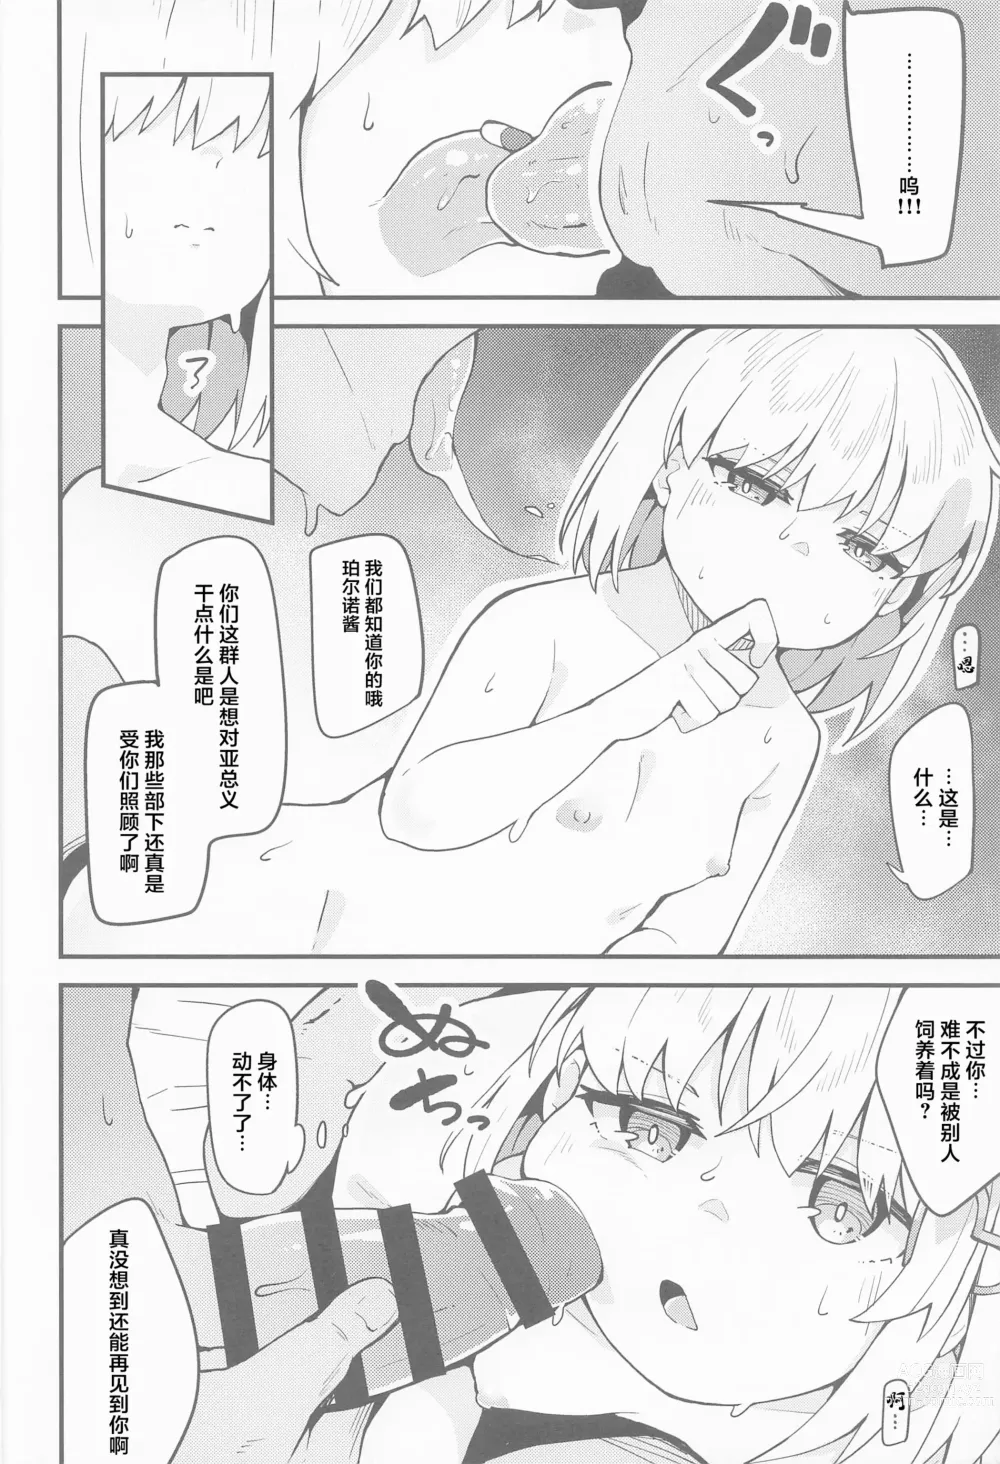 Page 15 of doujinshi Haru Uri Porno